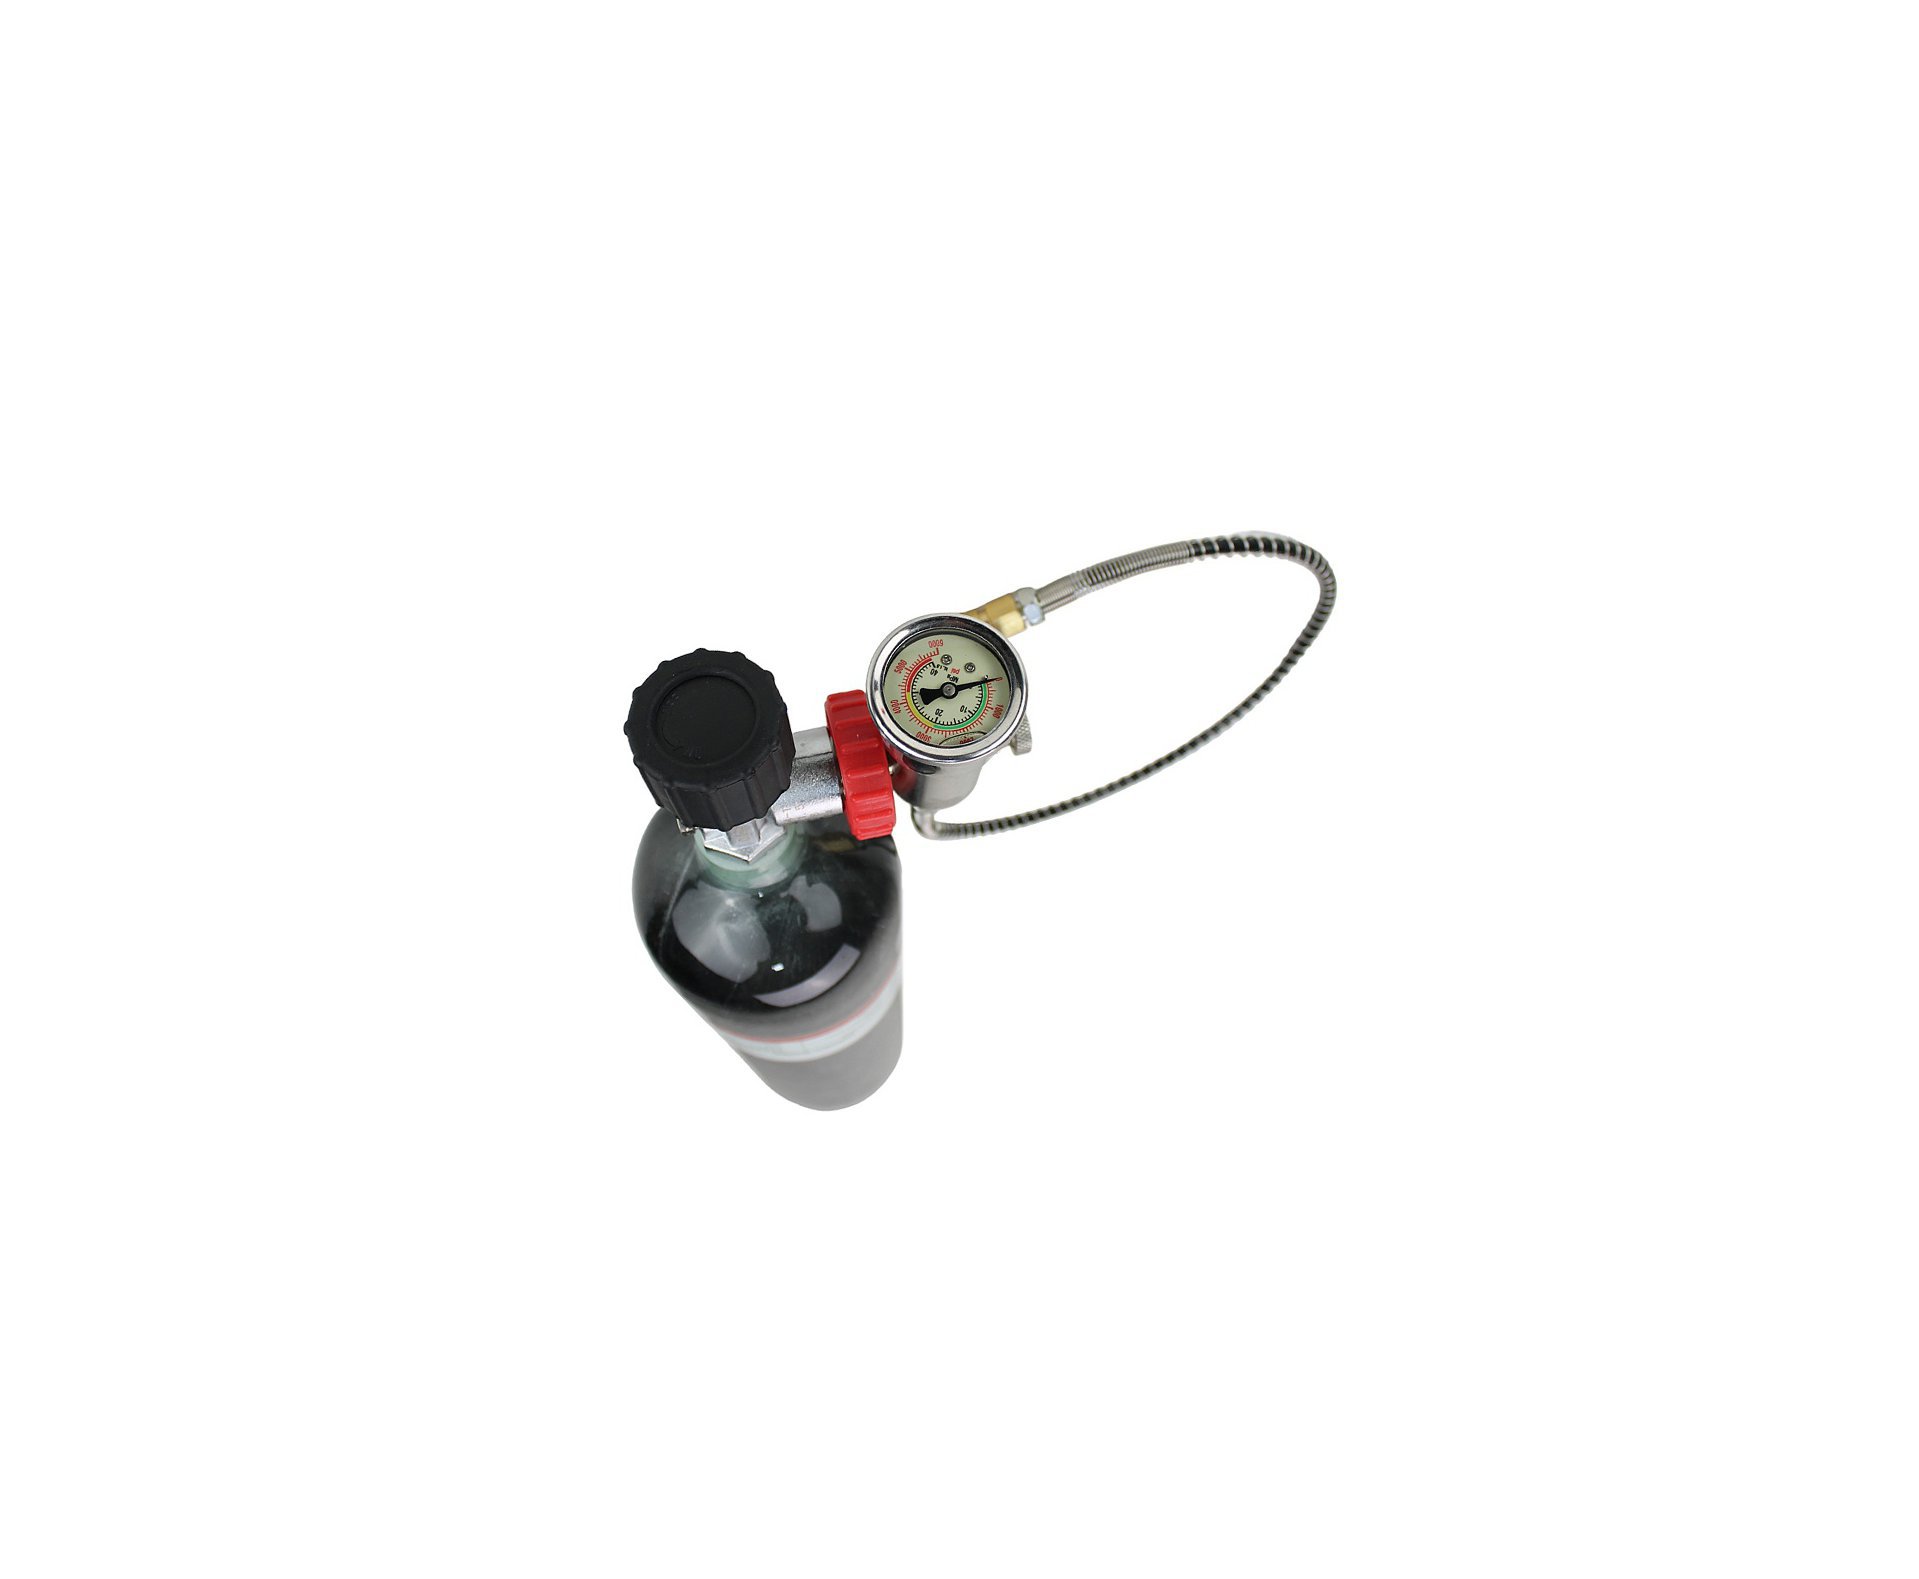 Cilindro Scuba 3L Fibra Carbono 300bar FXR + Estação de recarga DIN + Válvula Para Cilindro Scuba padrão DIN